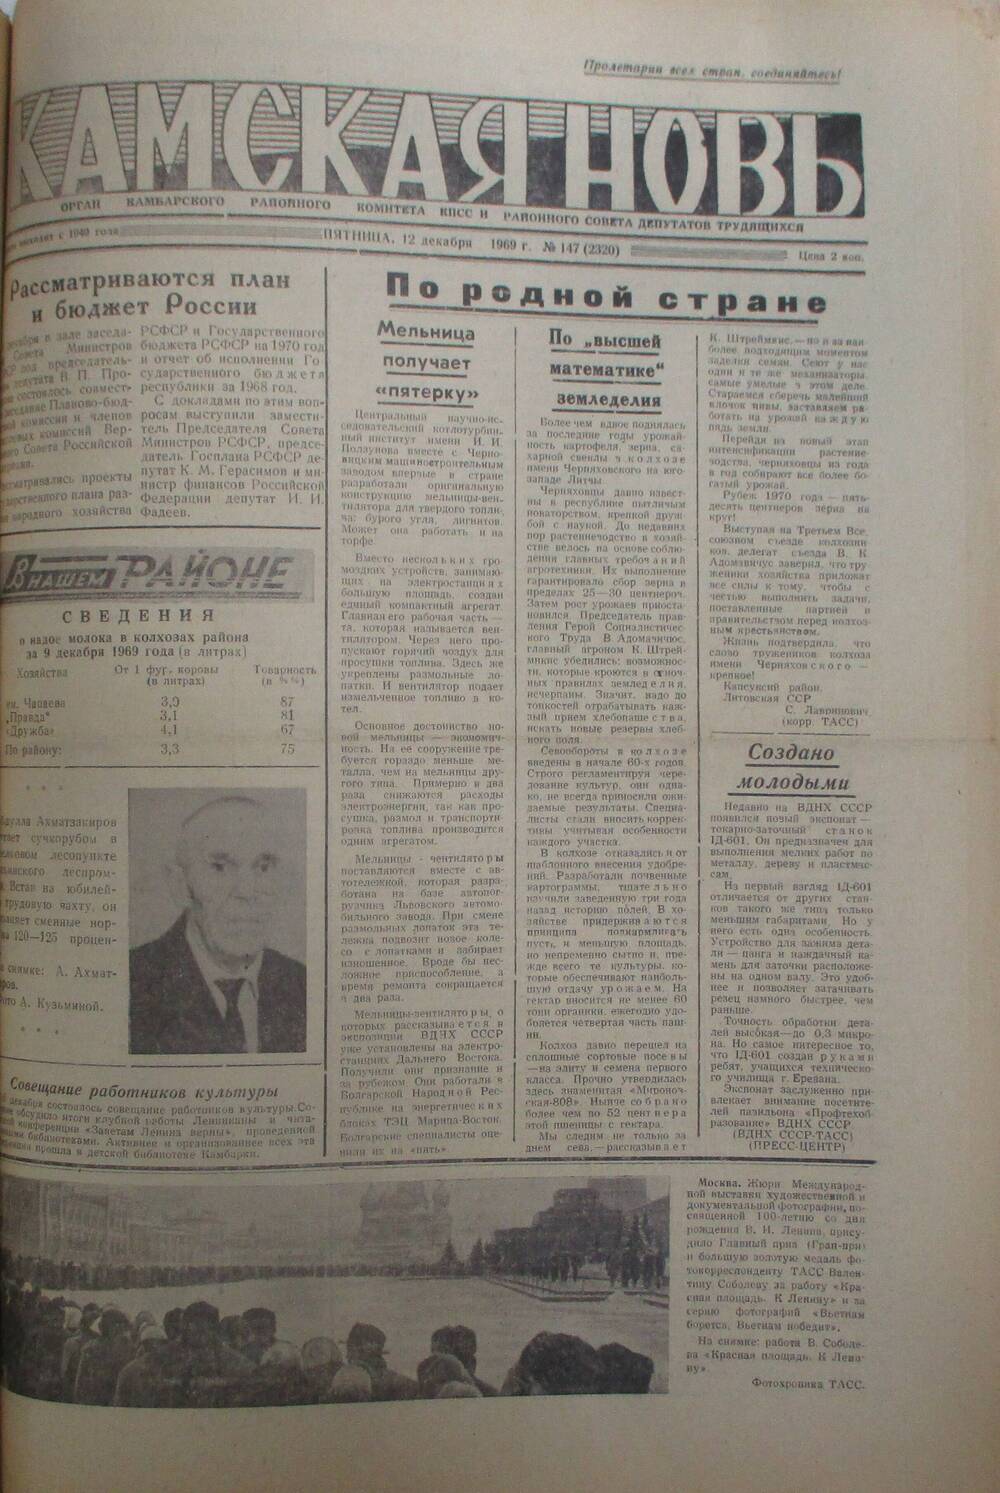 Газеты Камская новь за 1969 год, орган Камбарского райсовета и  РККПСС, с №1 по №66, с №68 по №156. №147.